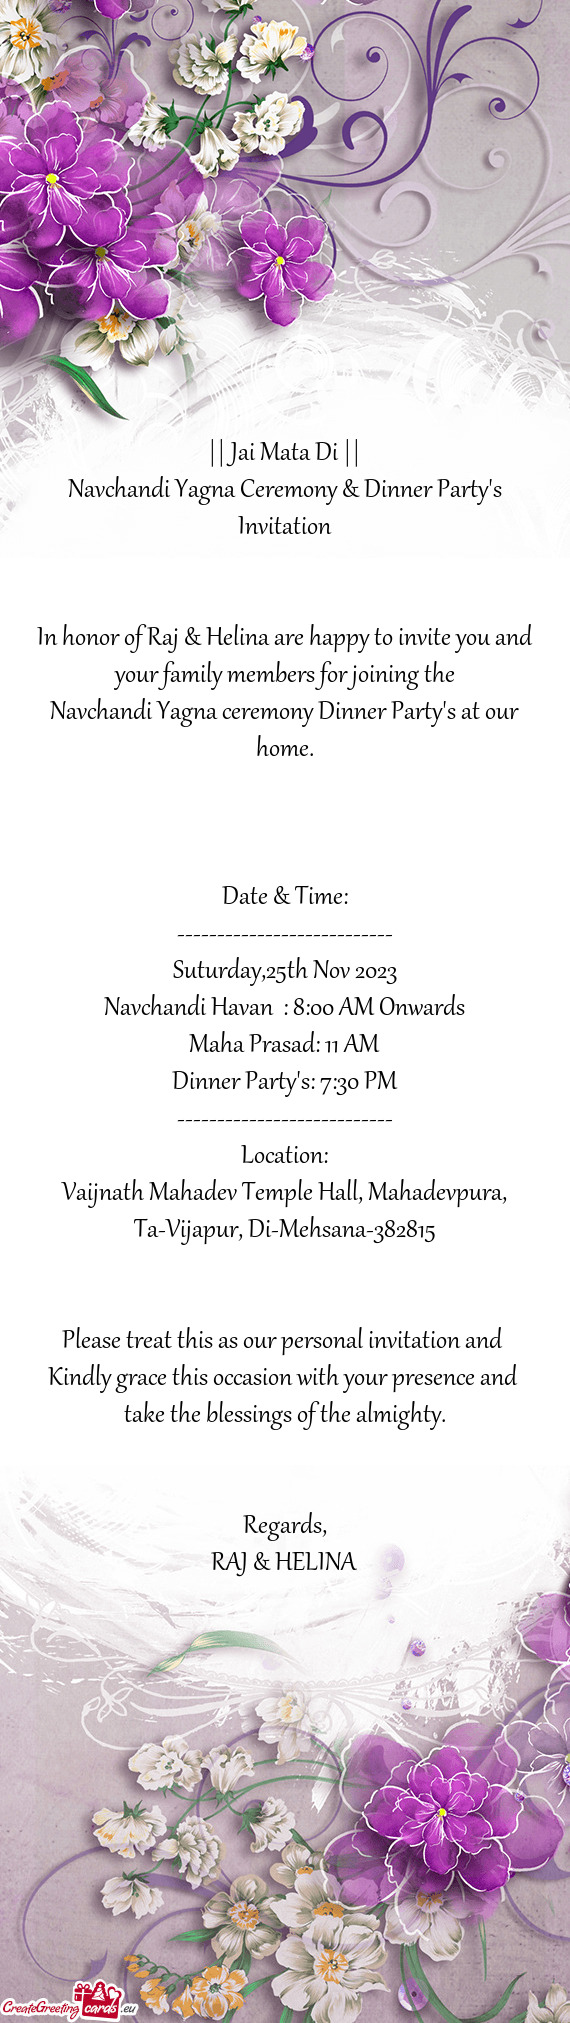 Navchandi Yagna Ceremony & Dinner Party